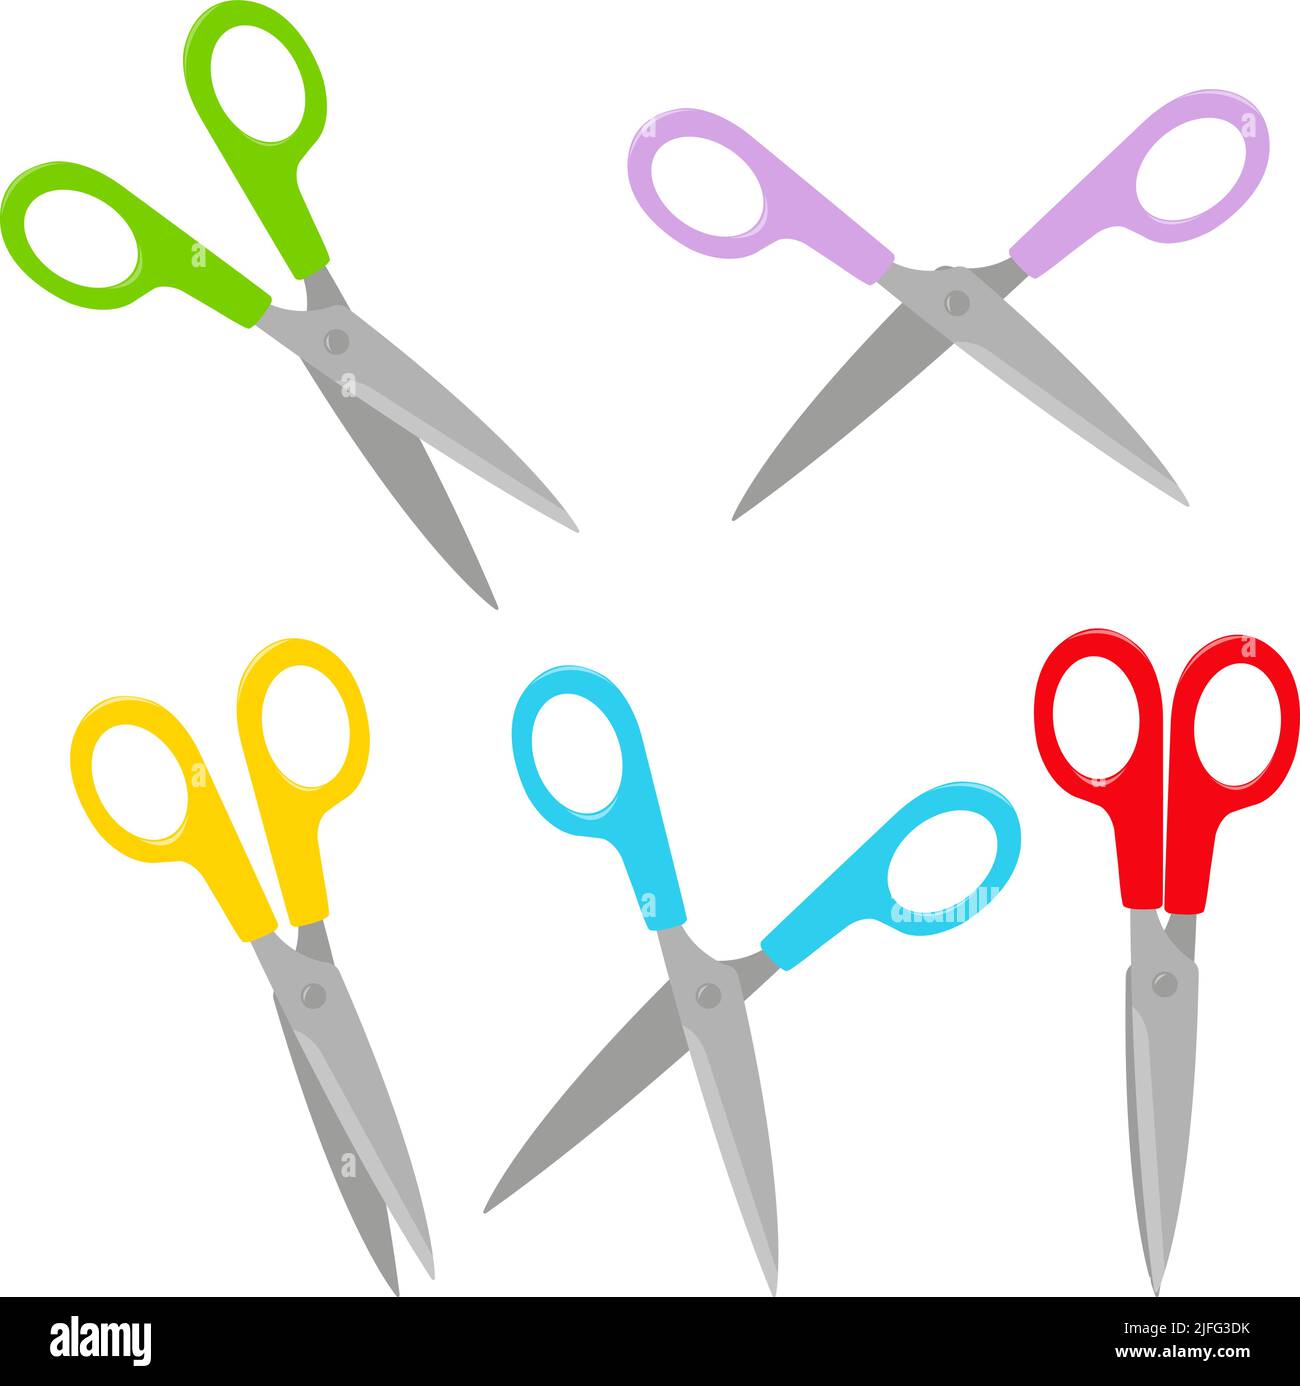 Scissors set on white background. Vector illustration Stock Vector